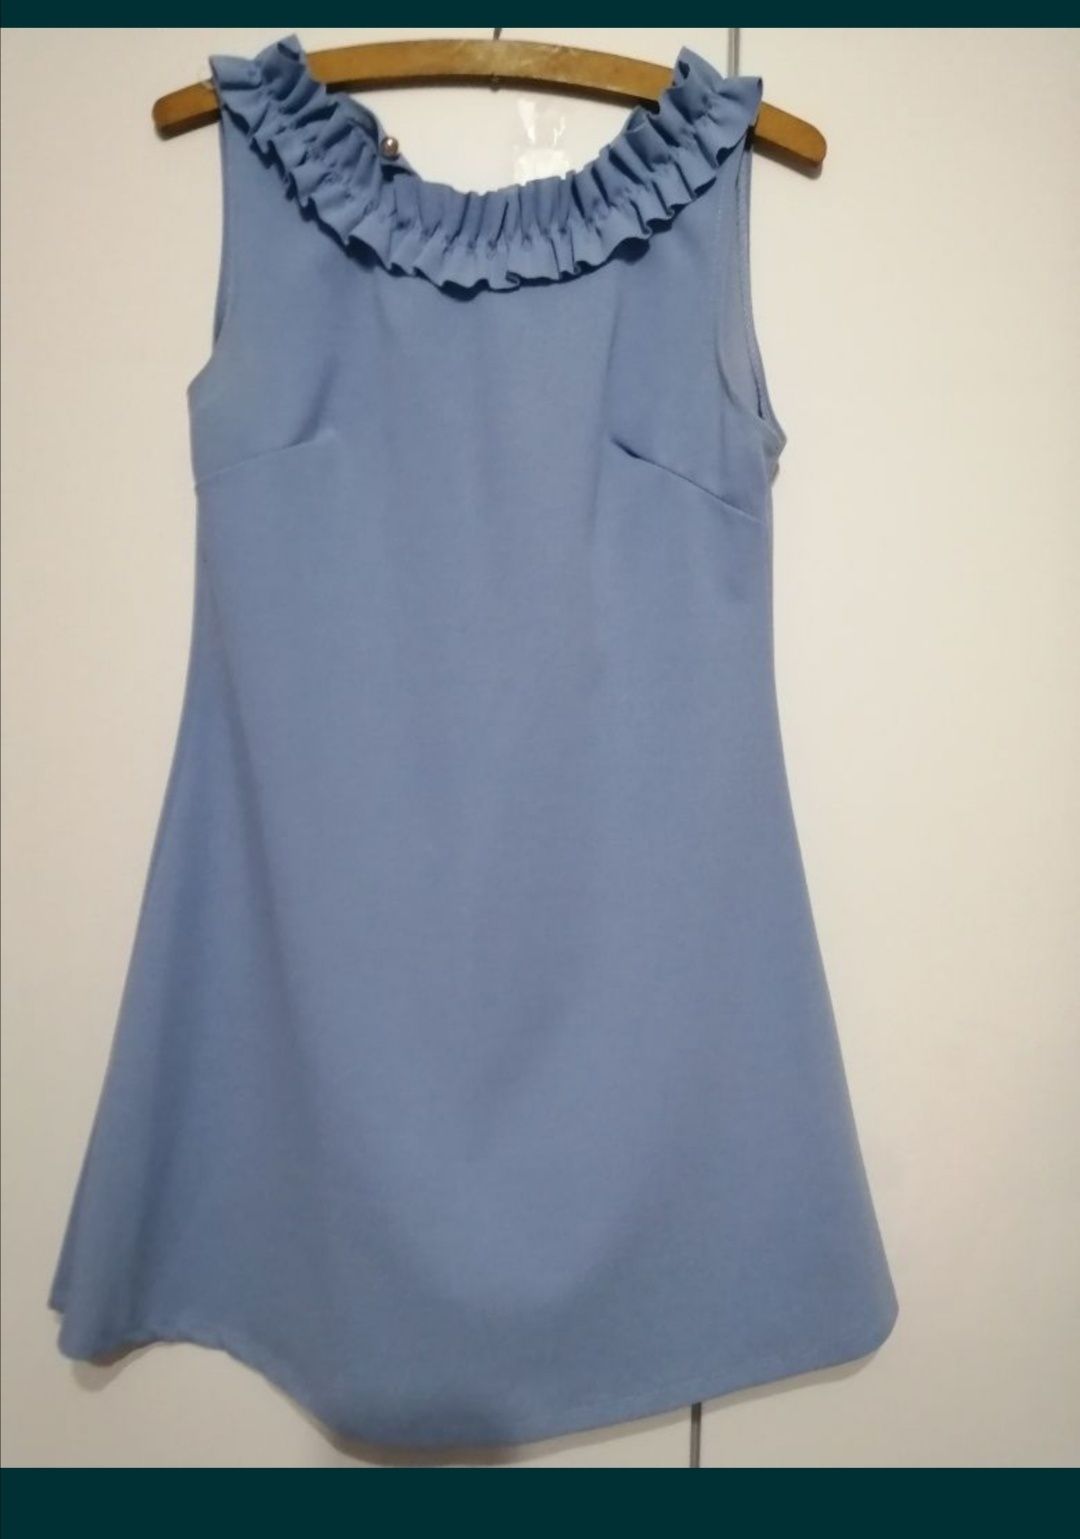 Błękitna/niebieska sukienka z falbanką na dekolcie